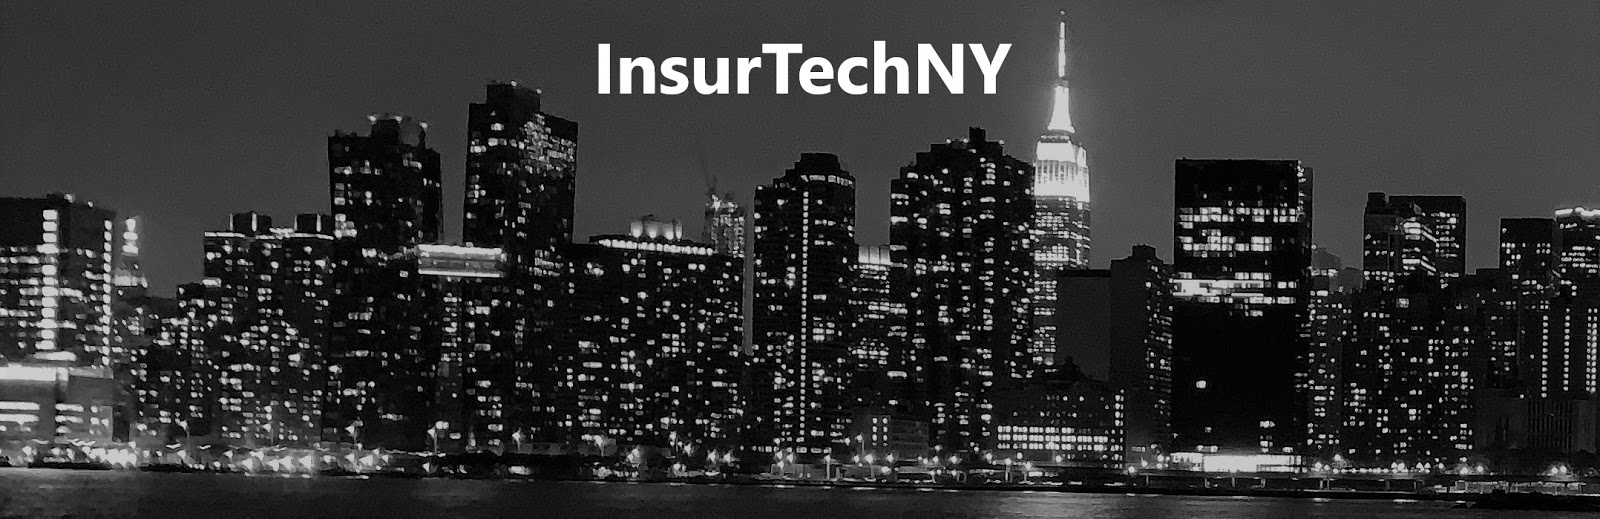 insurtech news insurance news